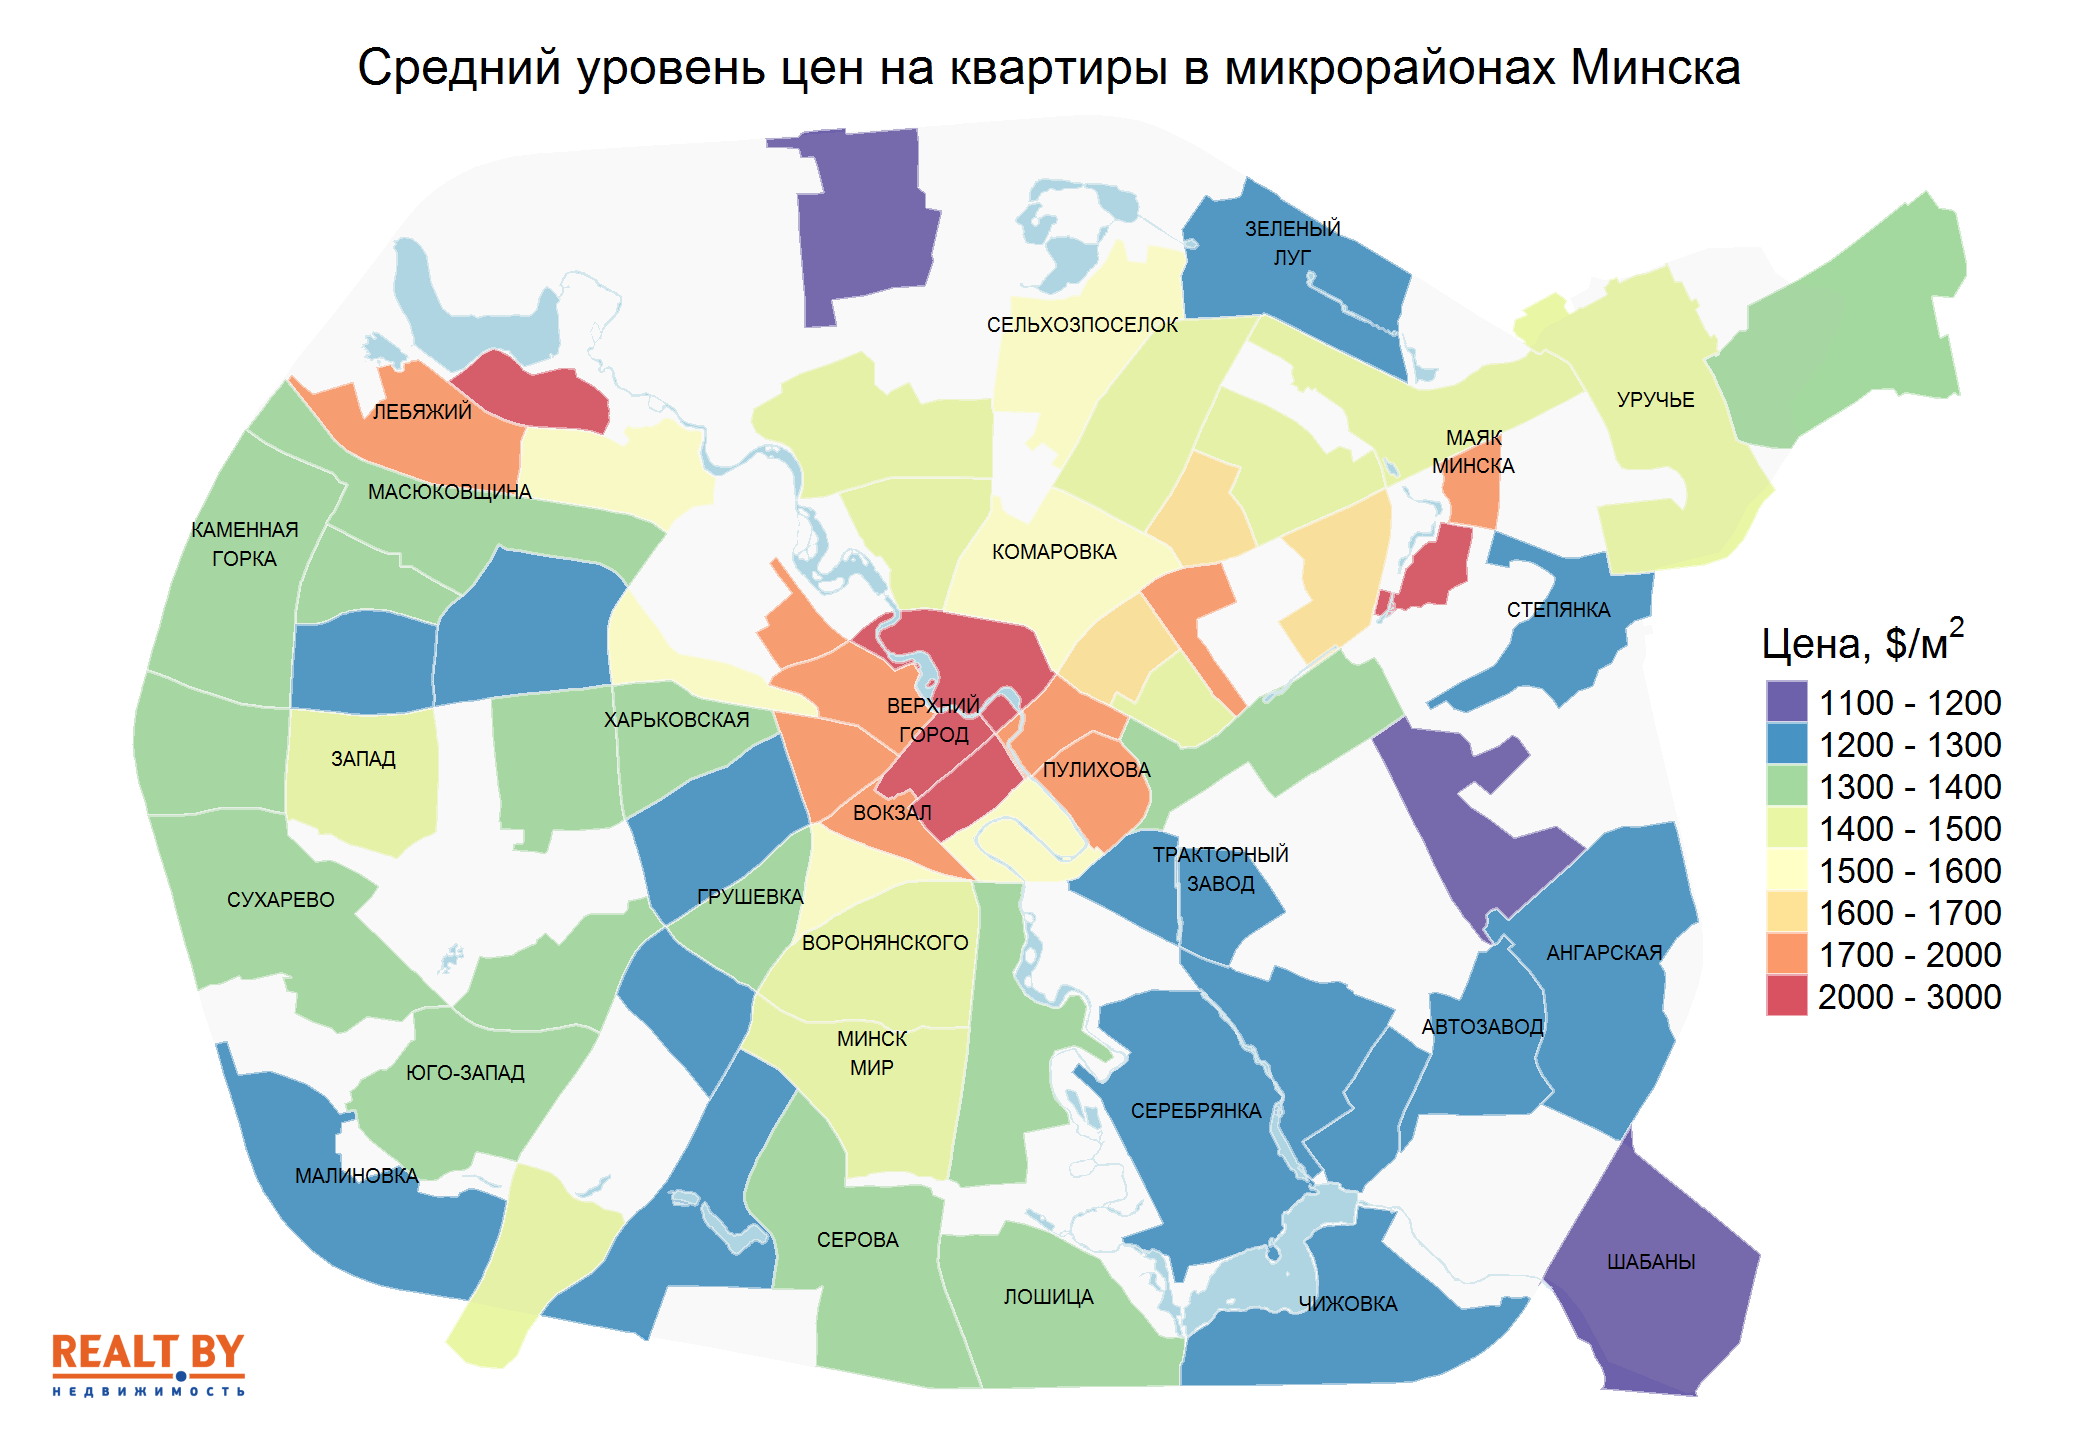 Мониторинг цен предложения квартир в Минске за 14-21 сентября 2020 года